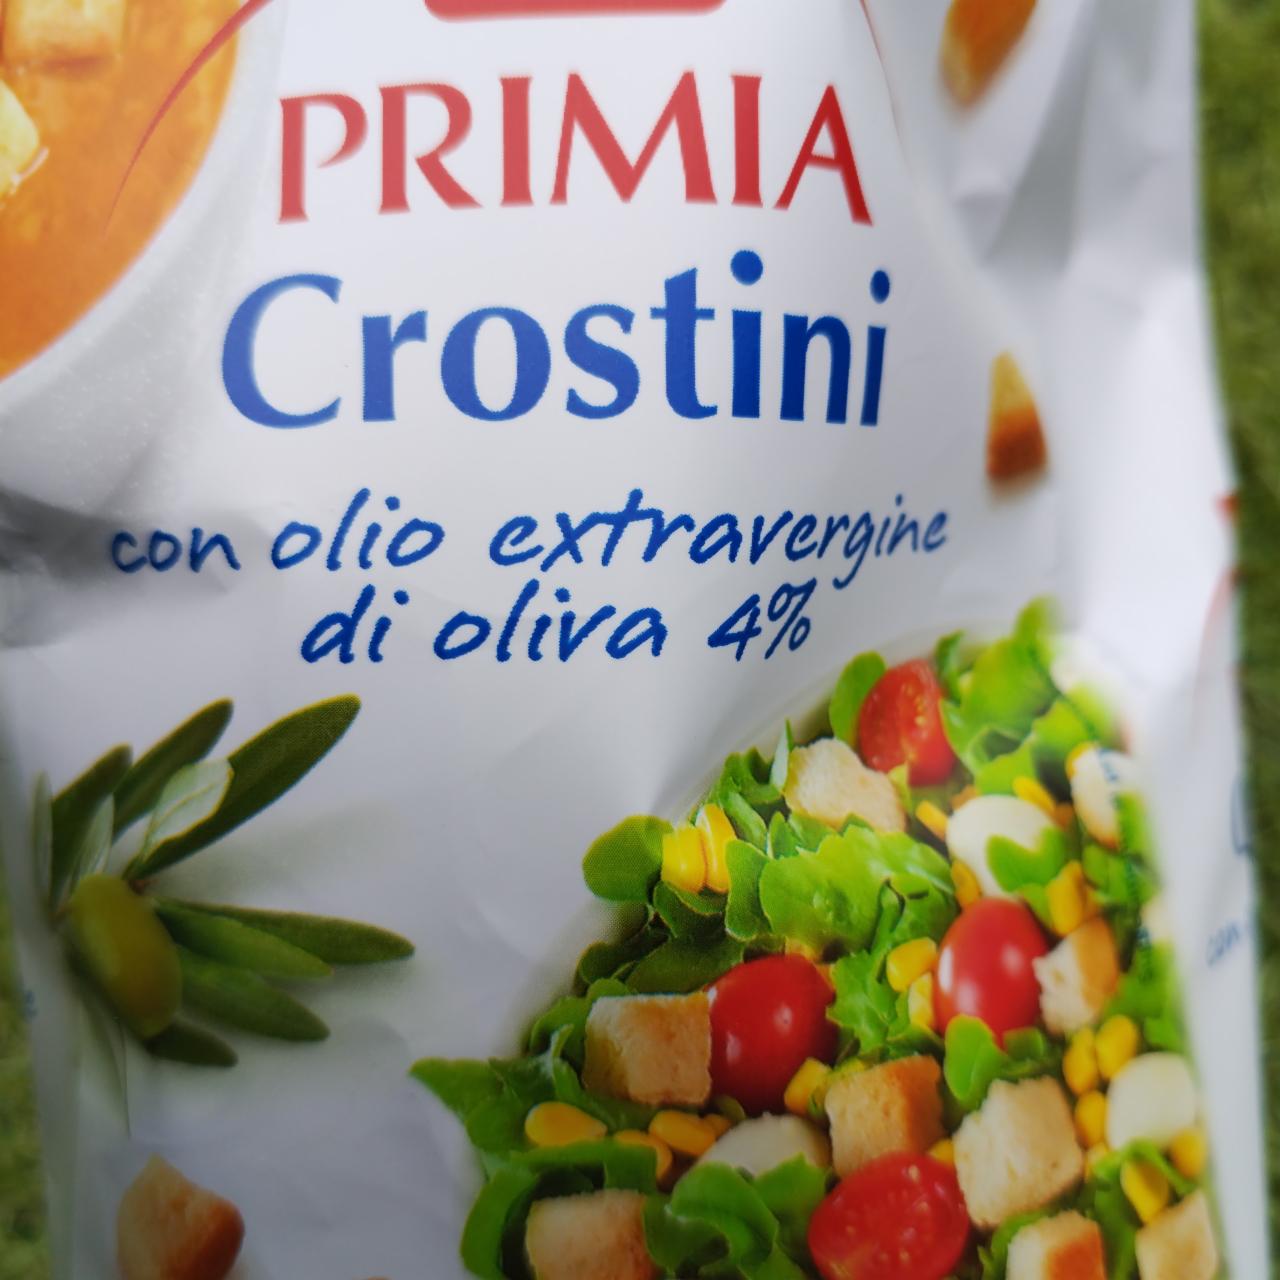 Fotografie - Crostini con olio extravergine di Oliva 4% Primia